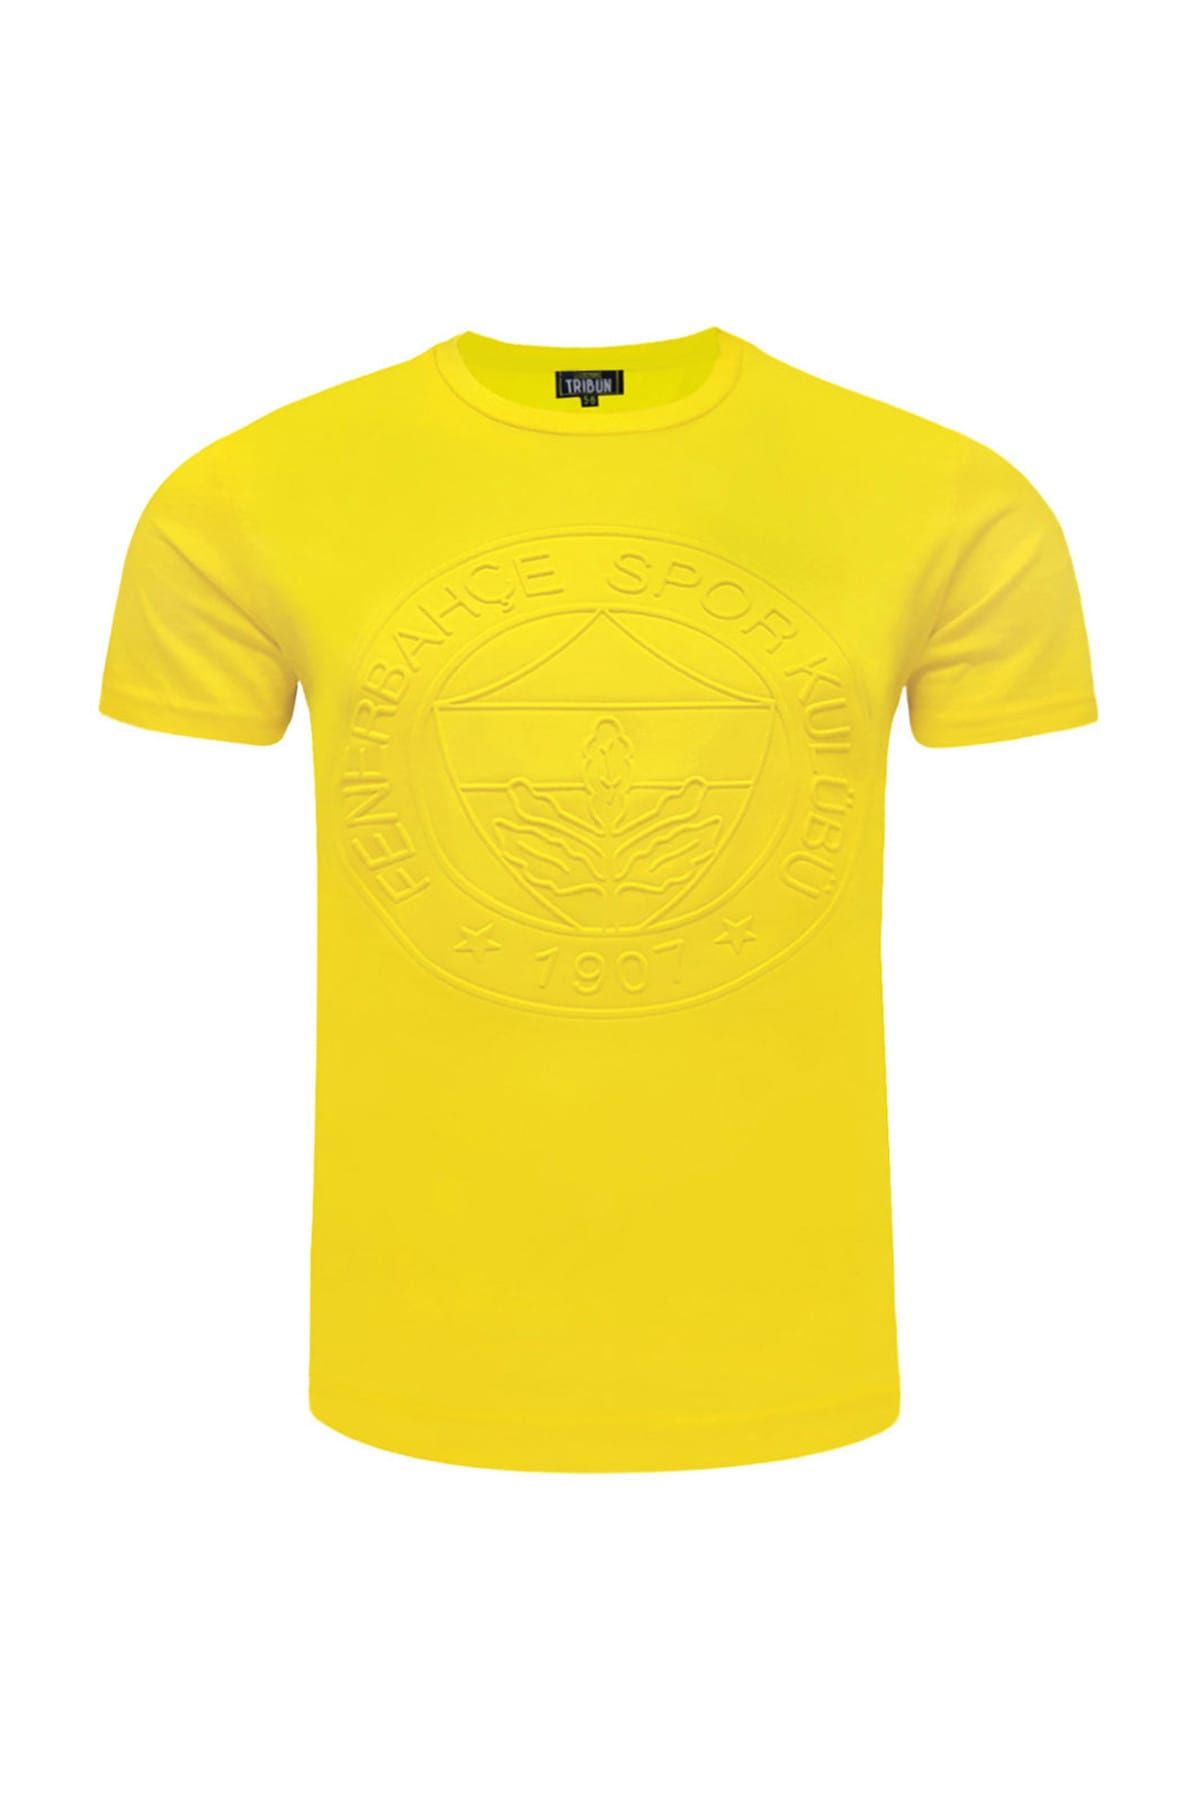 Fenerbahçe Sarı Çocuk T-Shirt Çocuk Trıbun Tek Renk Kk Emboss A-500-0-10